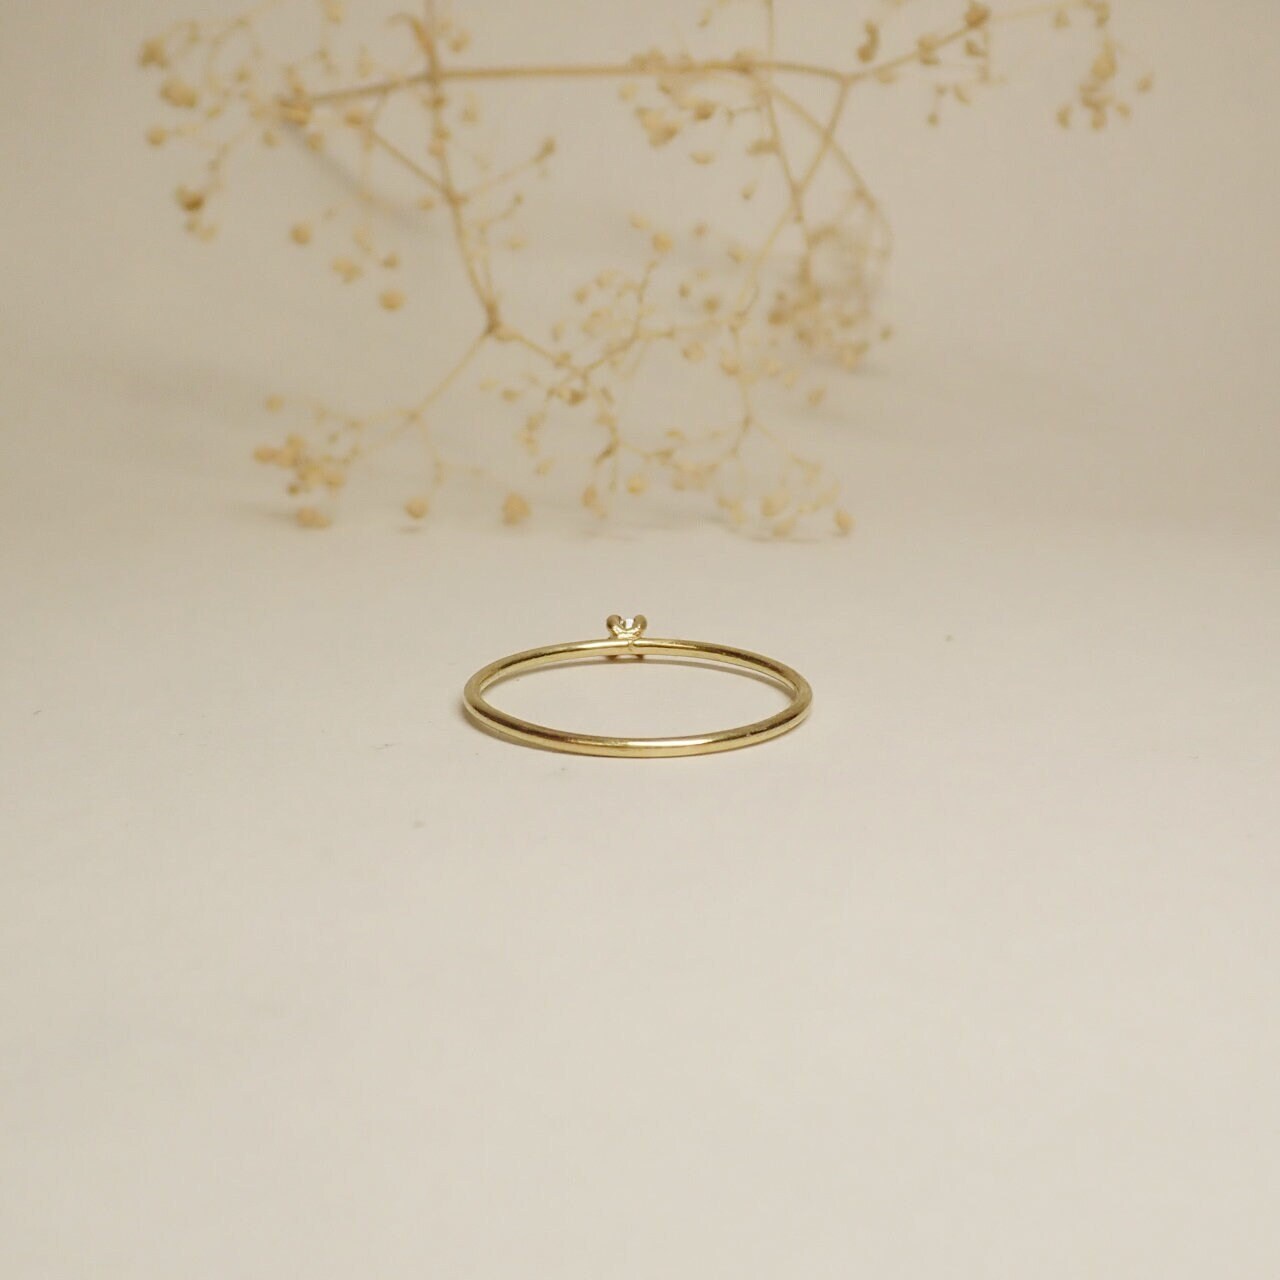 Buy Open Scroll 22k Wedding Ring at Nancy Troske Jewelry for only $6,500.00